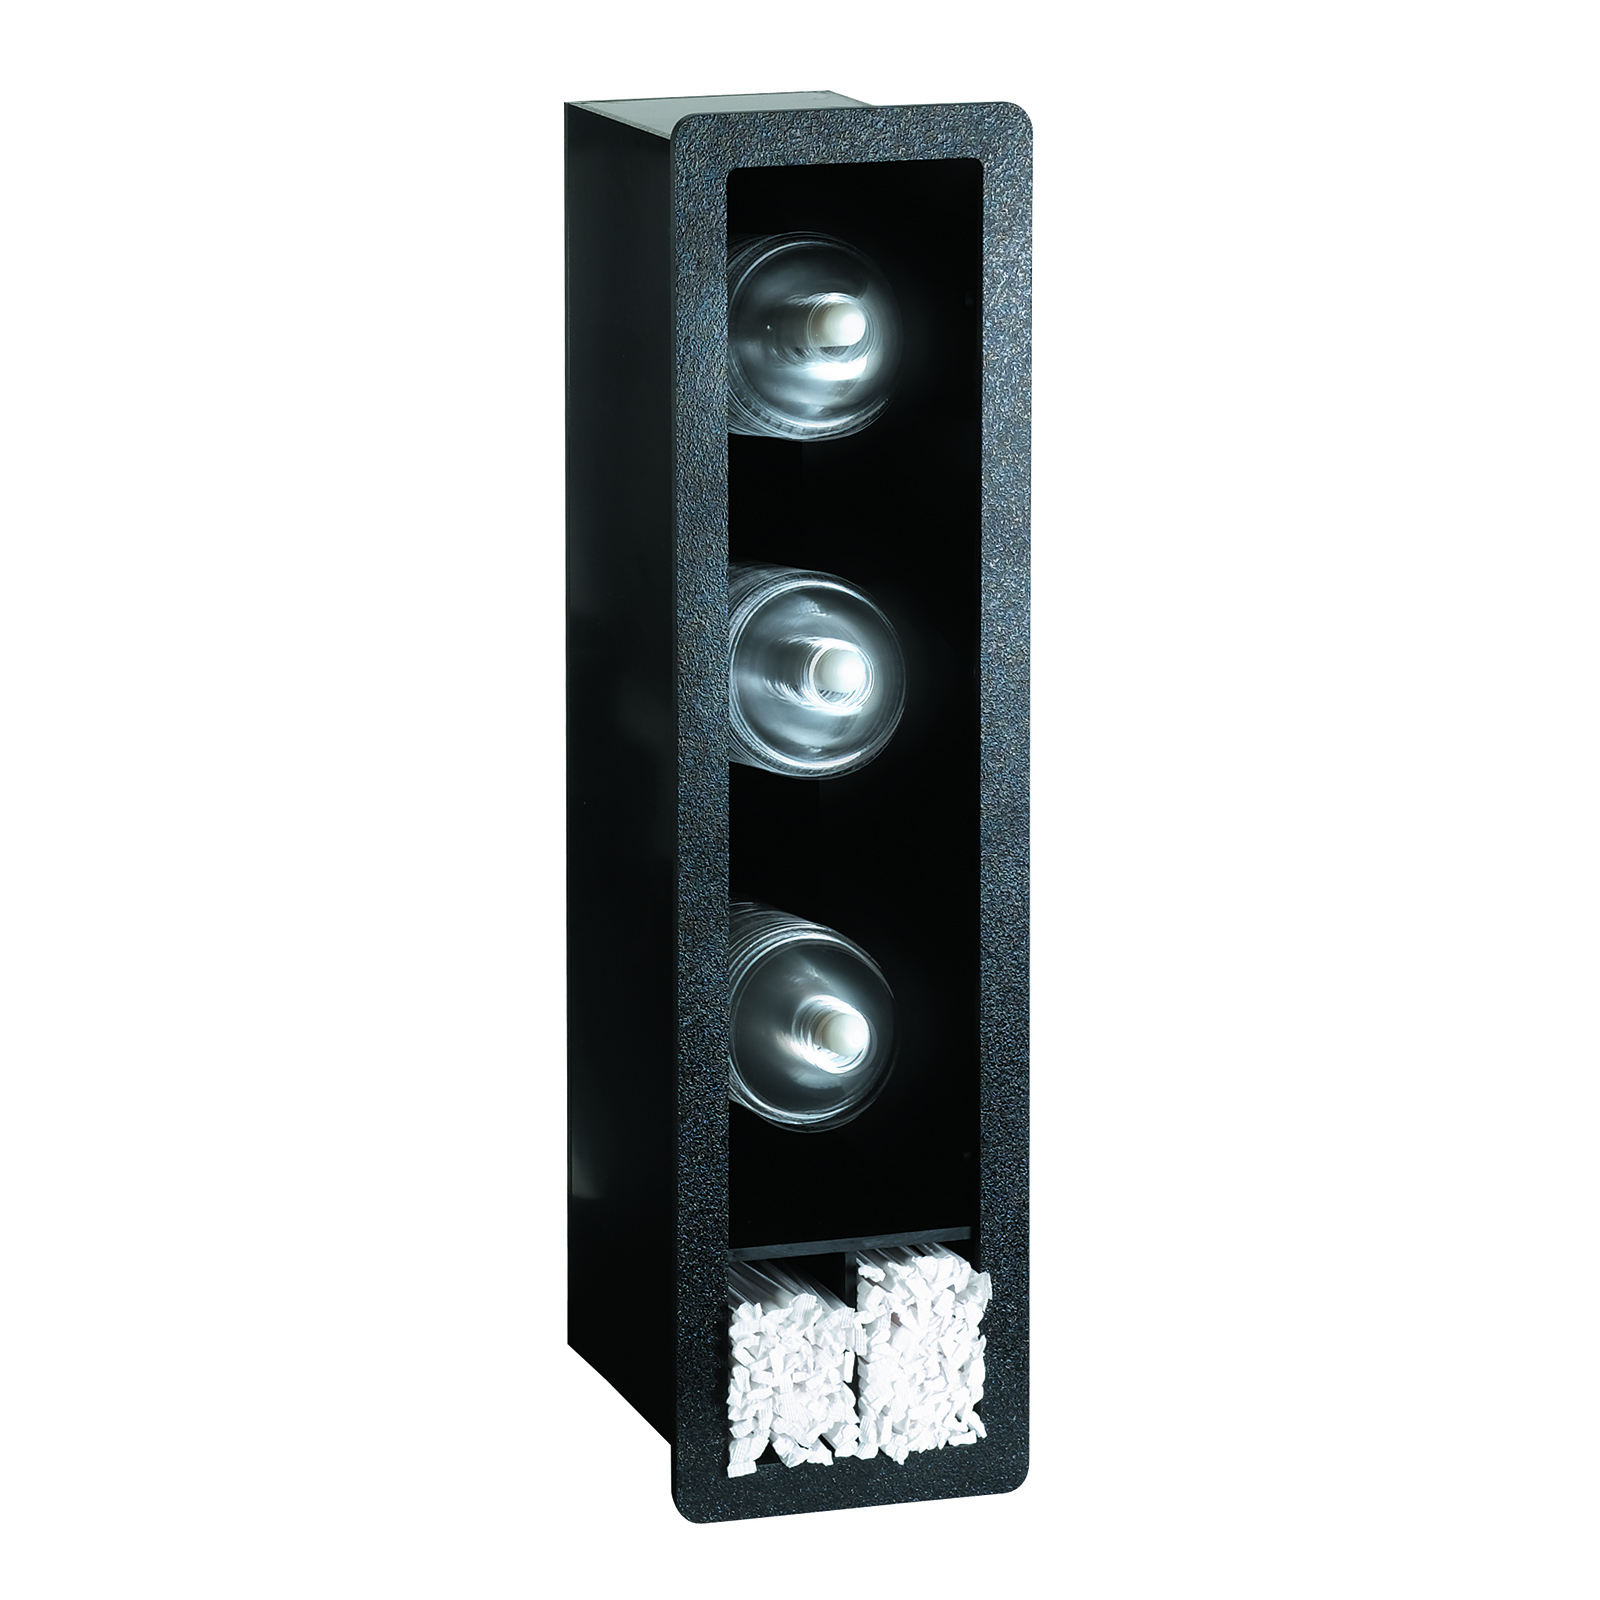 Dispense-Rite FMVDL-3 Lid Dispenser, In-Counter